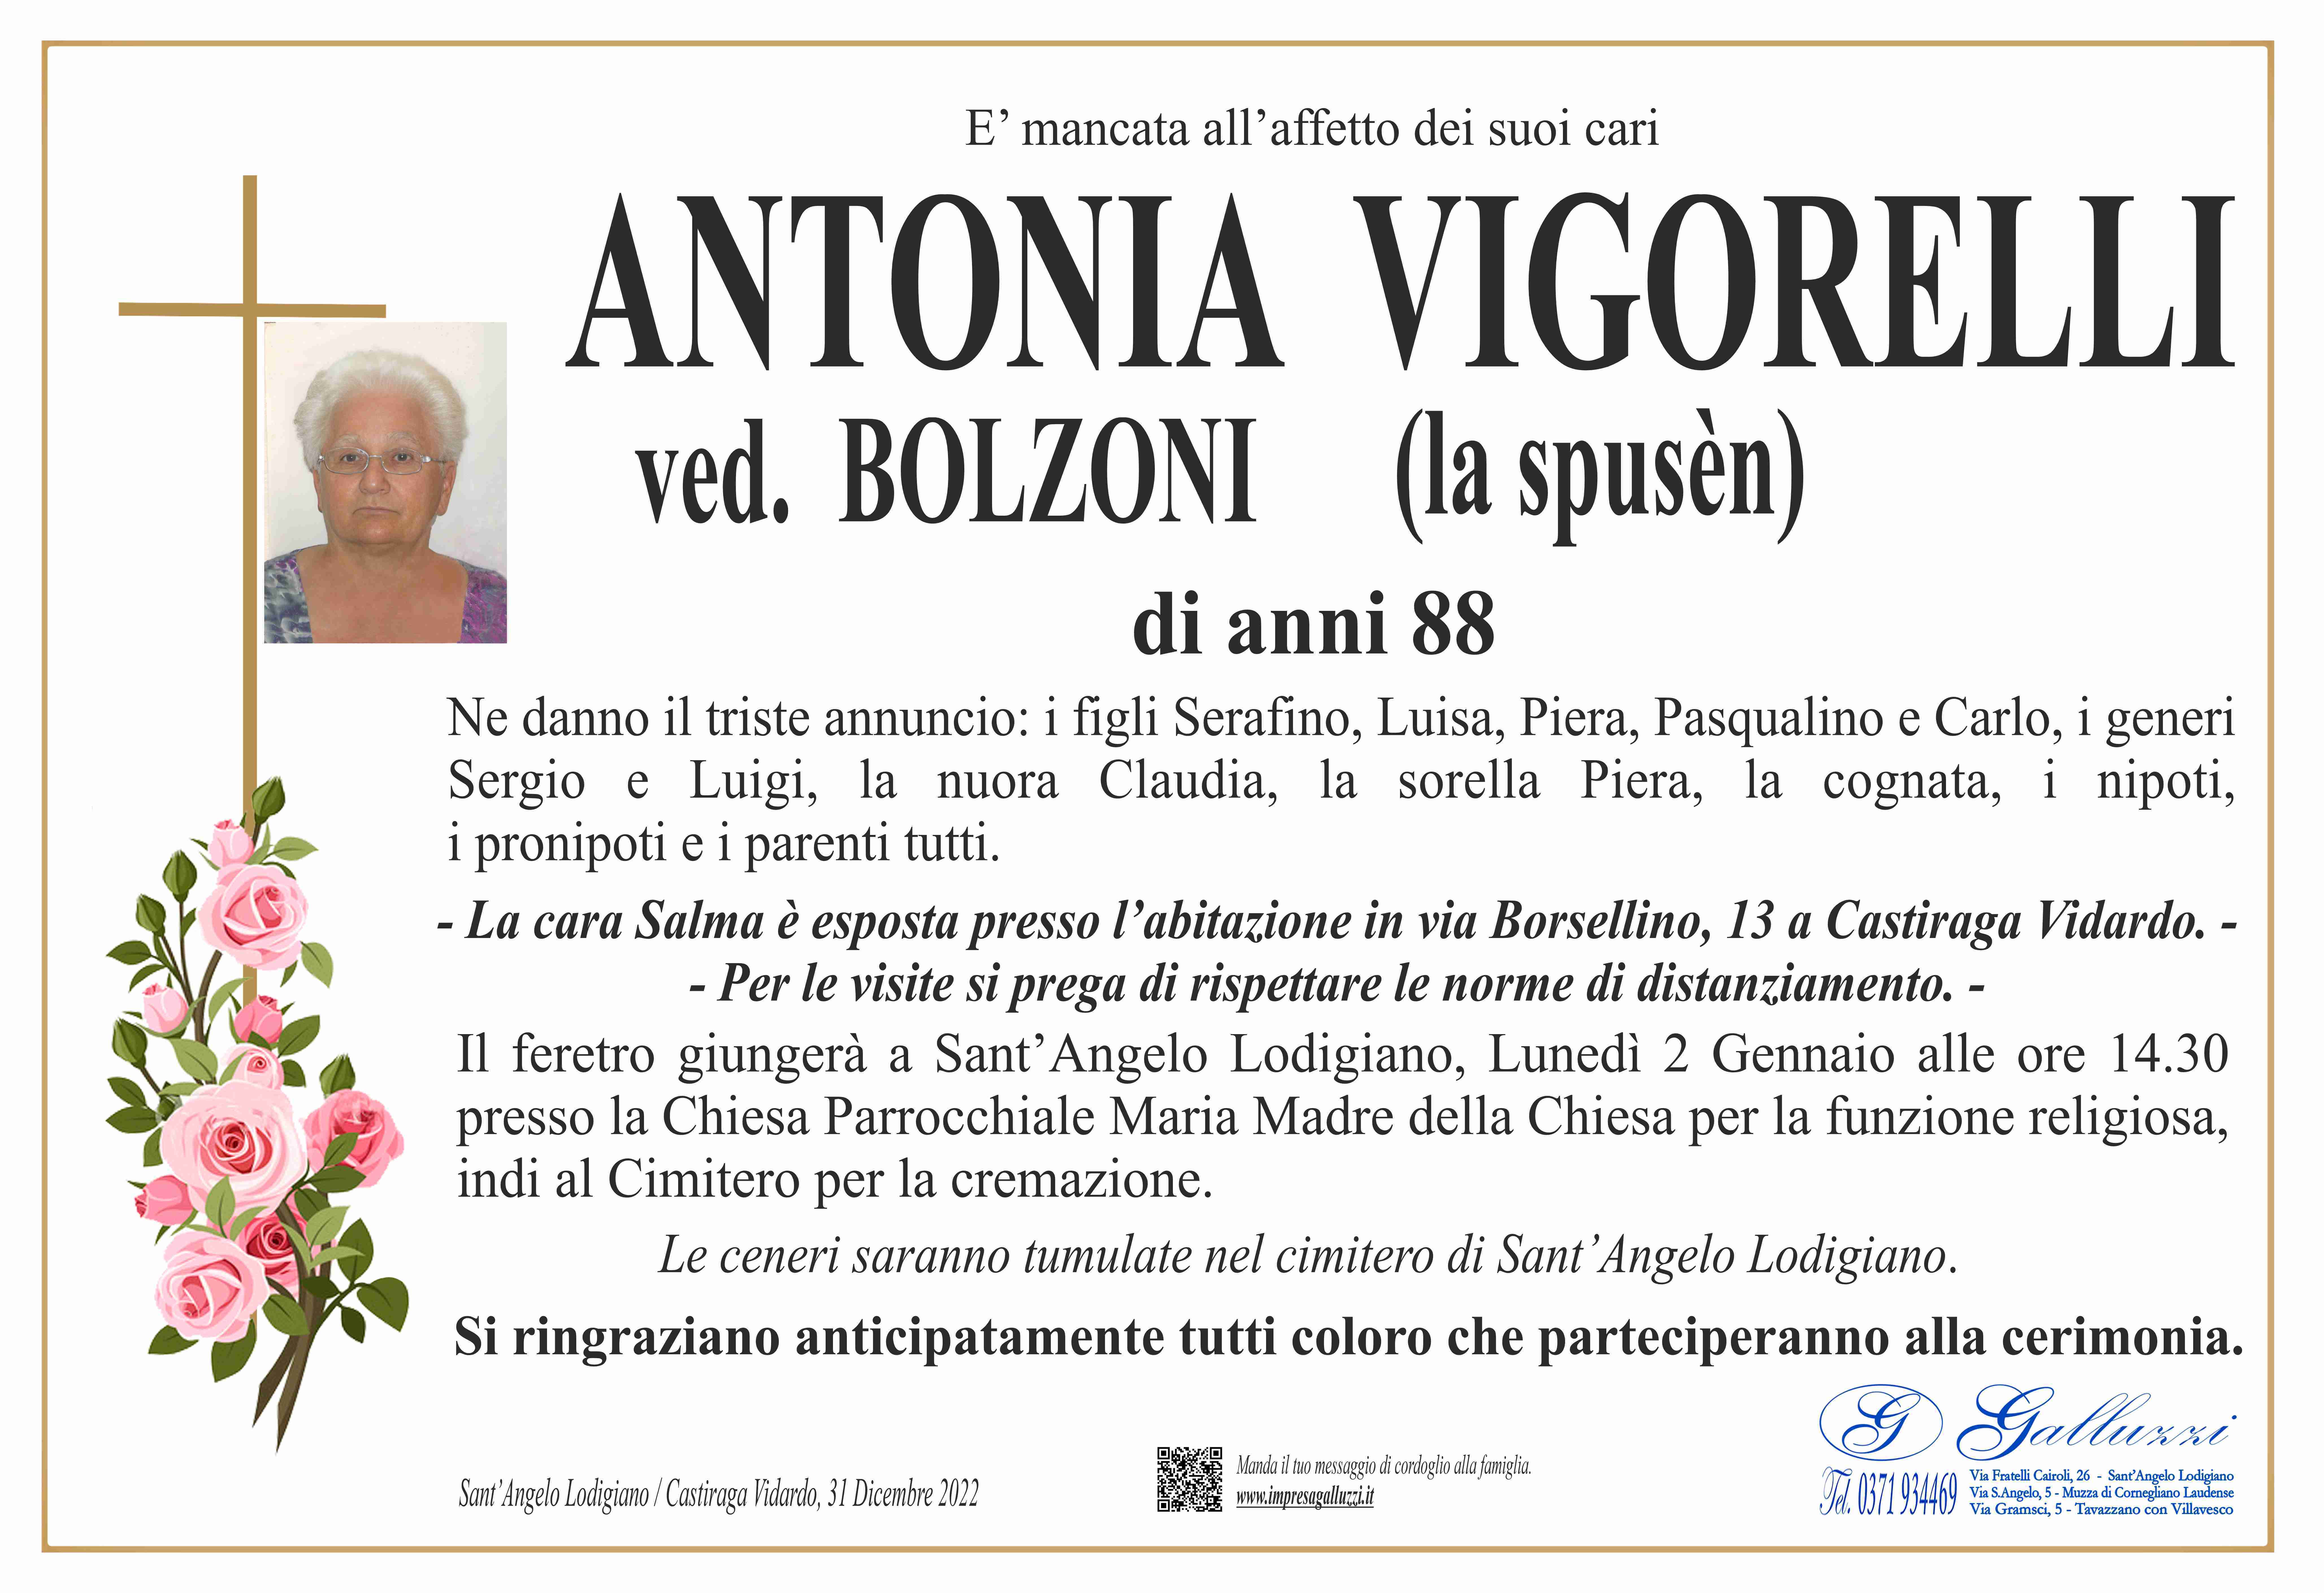 Antonia Vigorelli